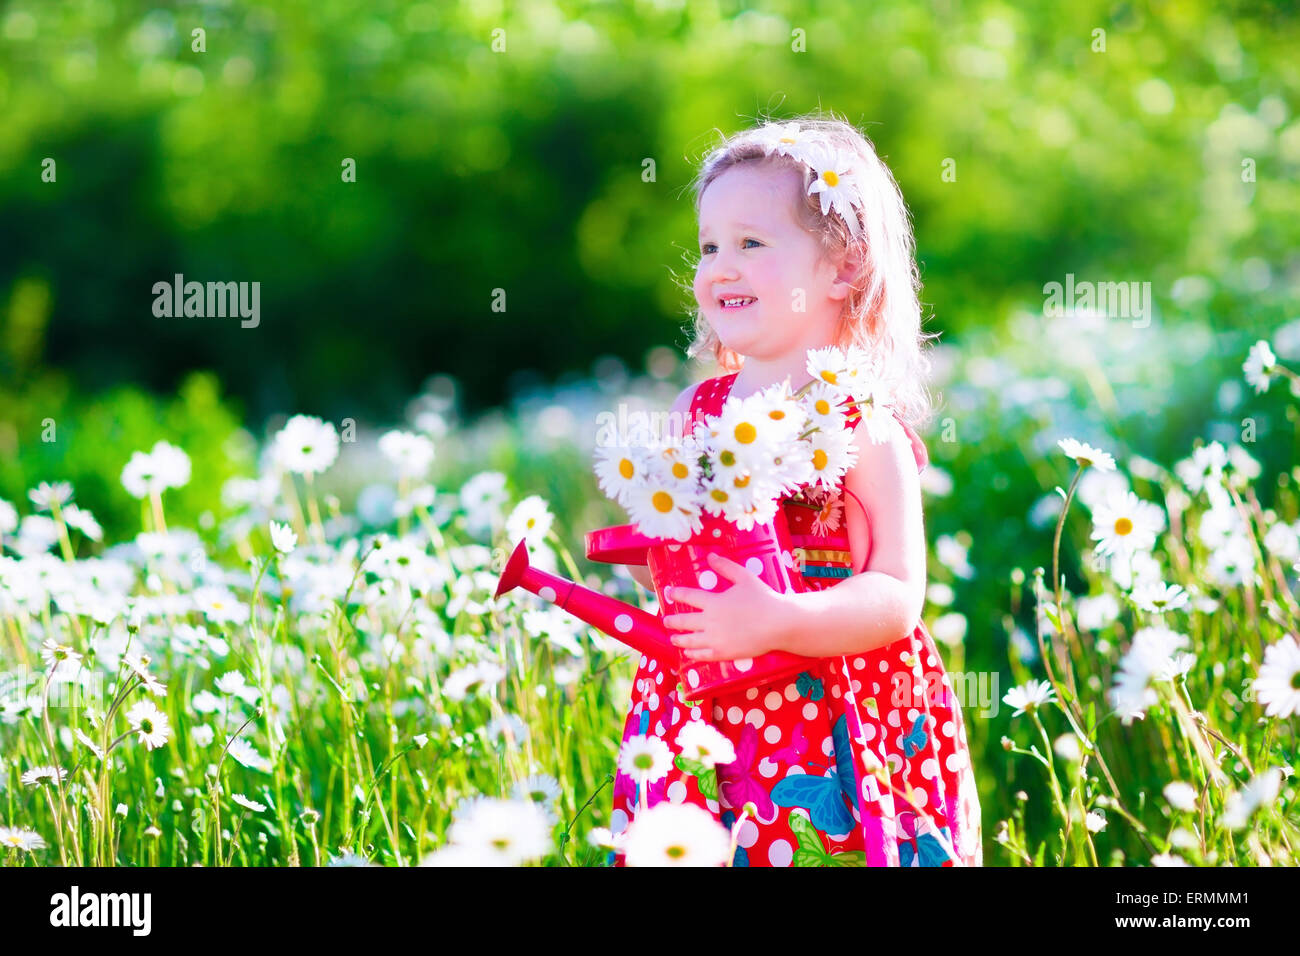 Jardinage pour enfants. Petite fille avec de l'eau peut dans un champ de fleurs Daisy. Enfants jouant dans le jardin avec des fleurs. Banque D'Images